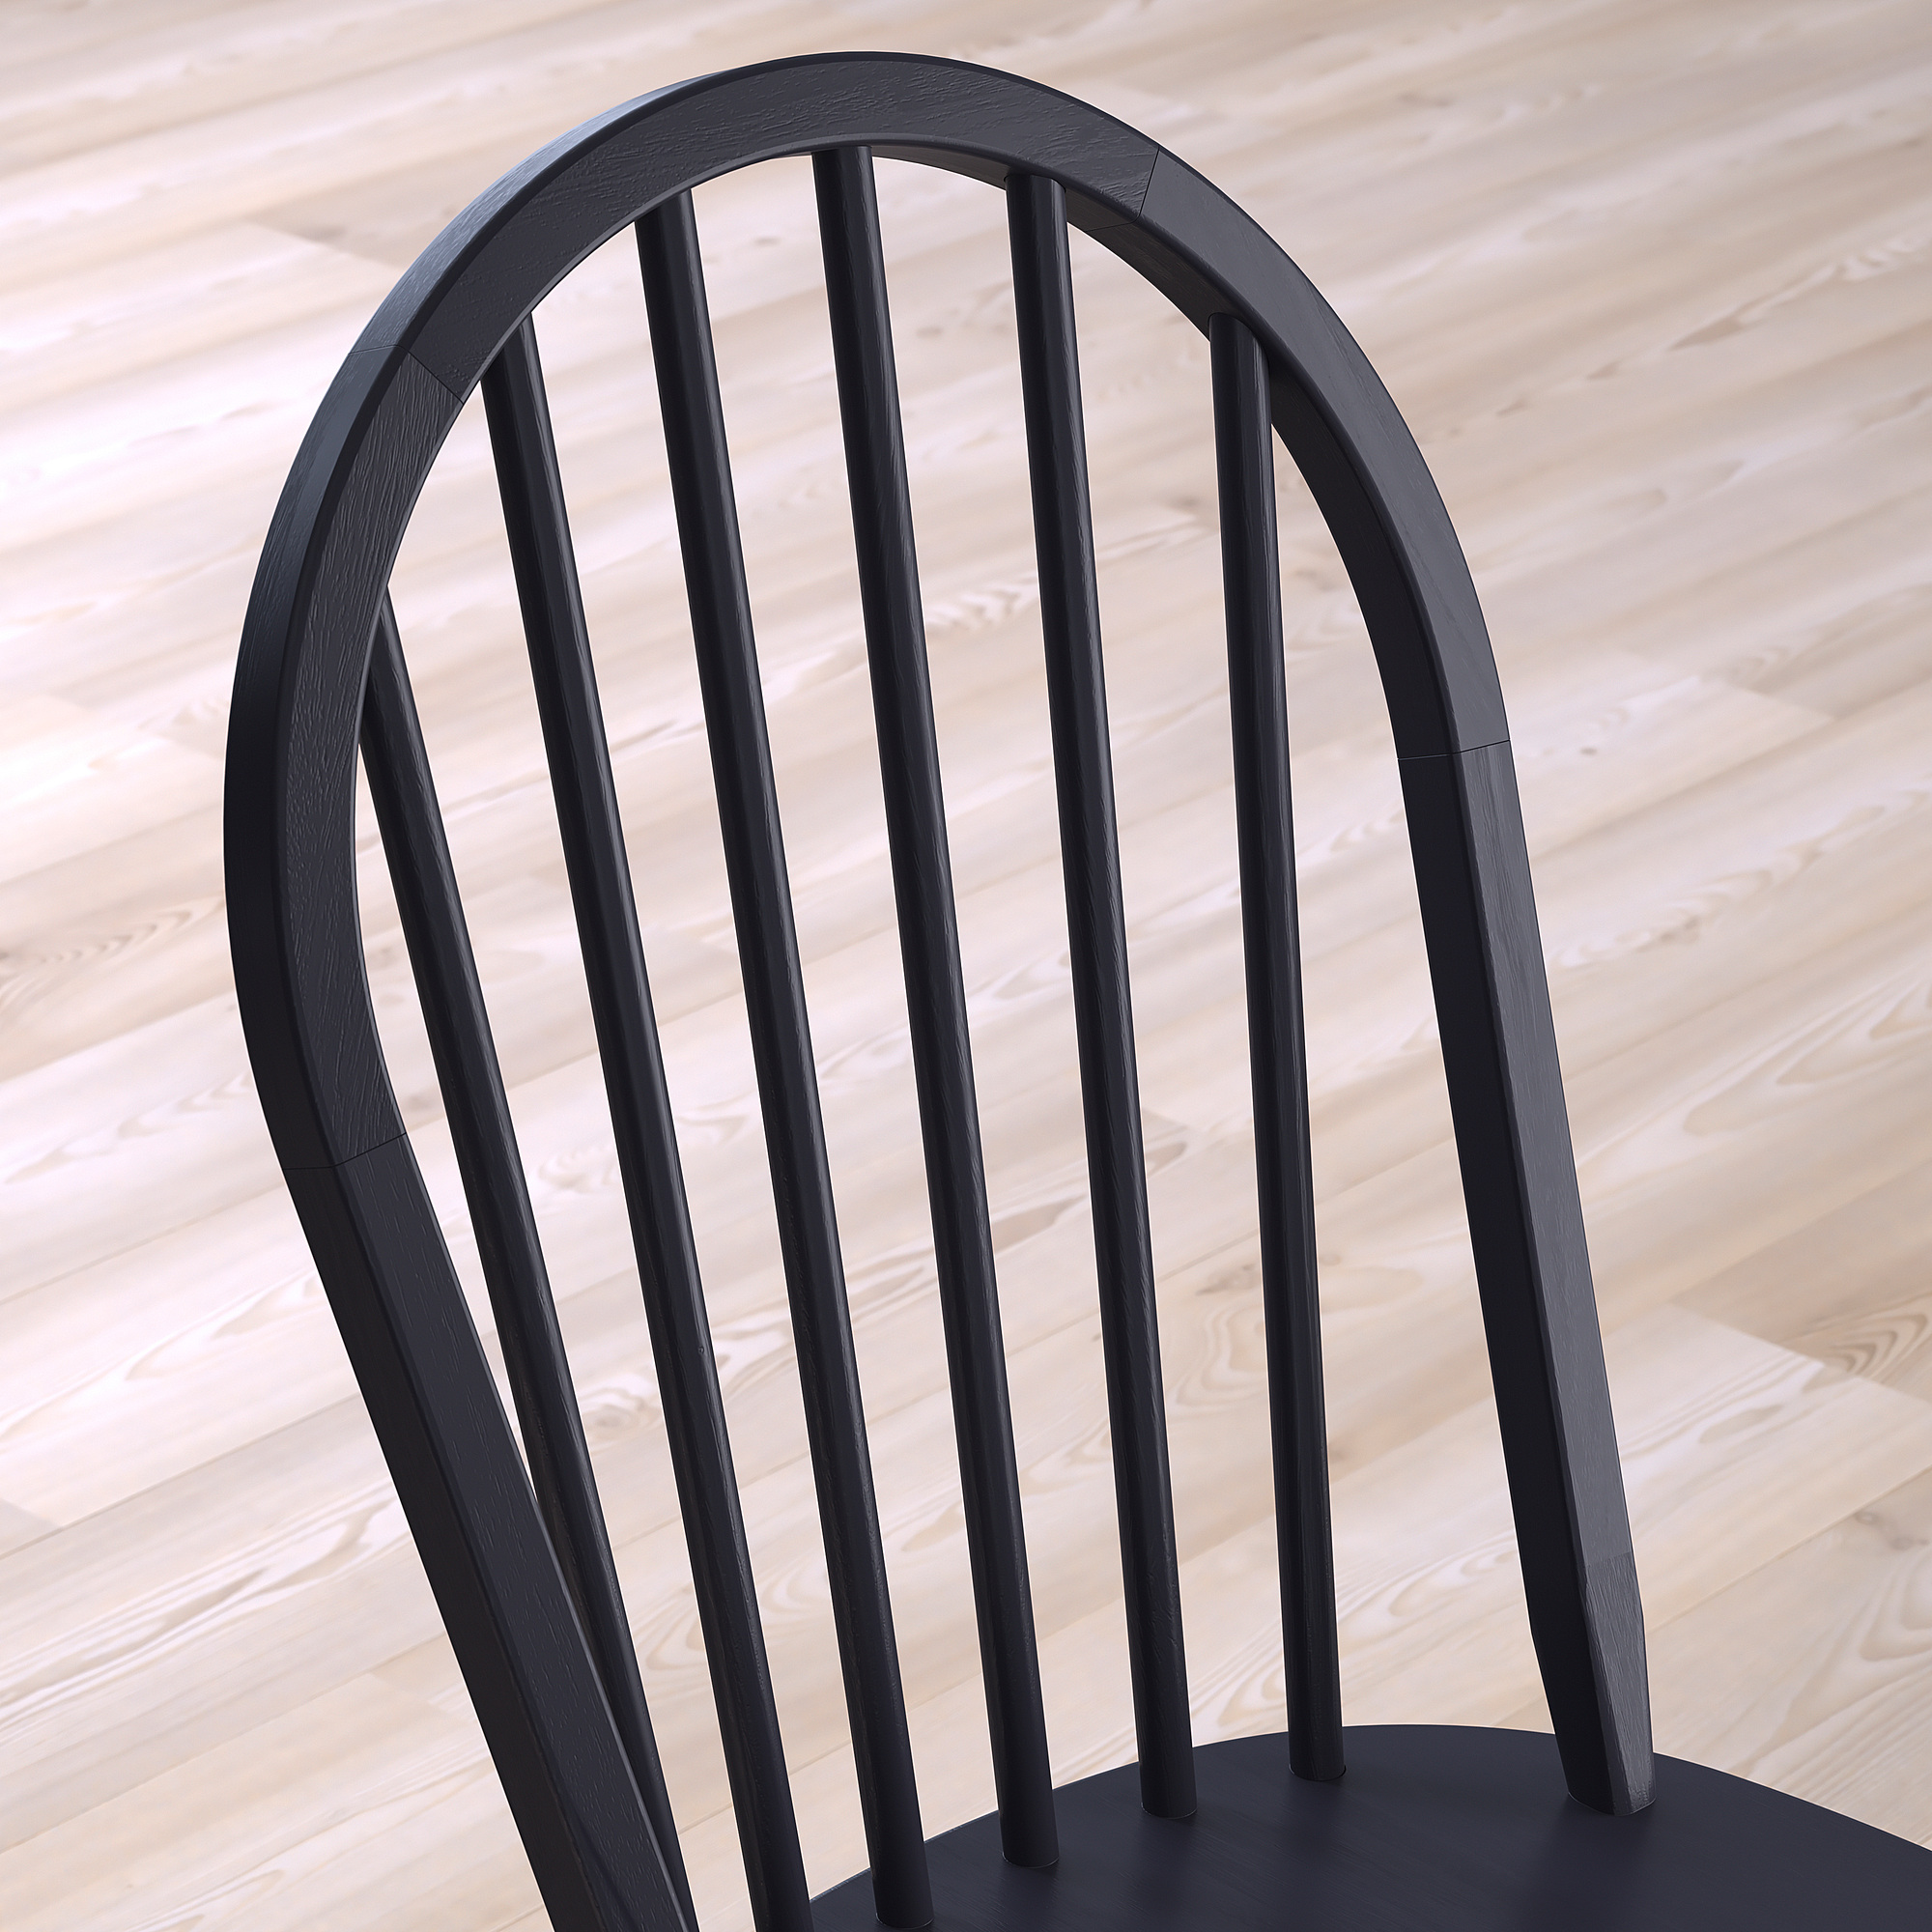 SKOGSTA chair